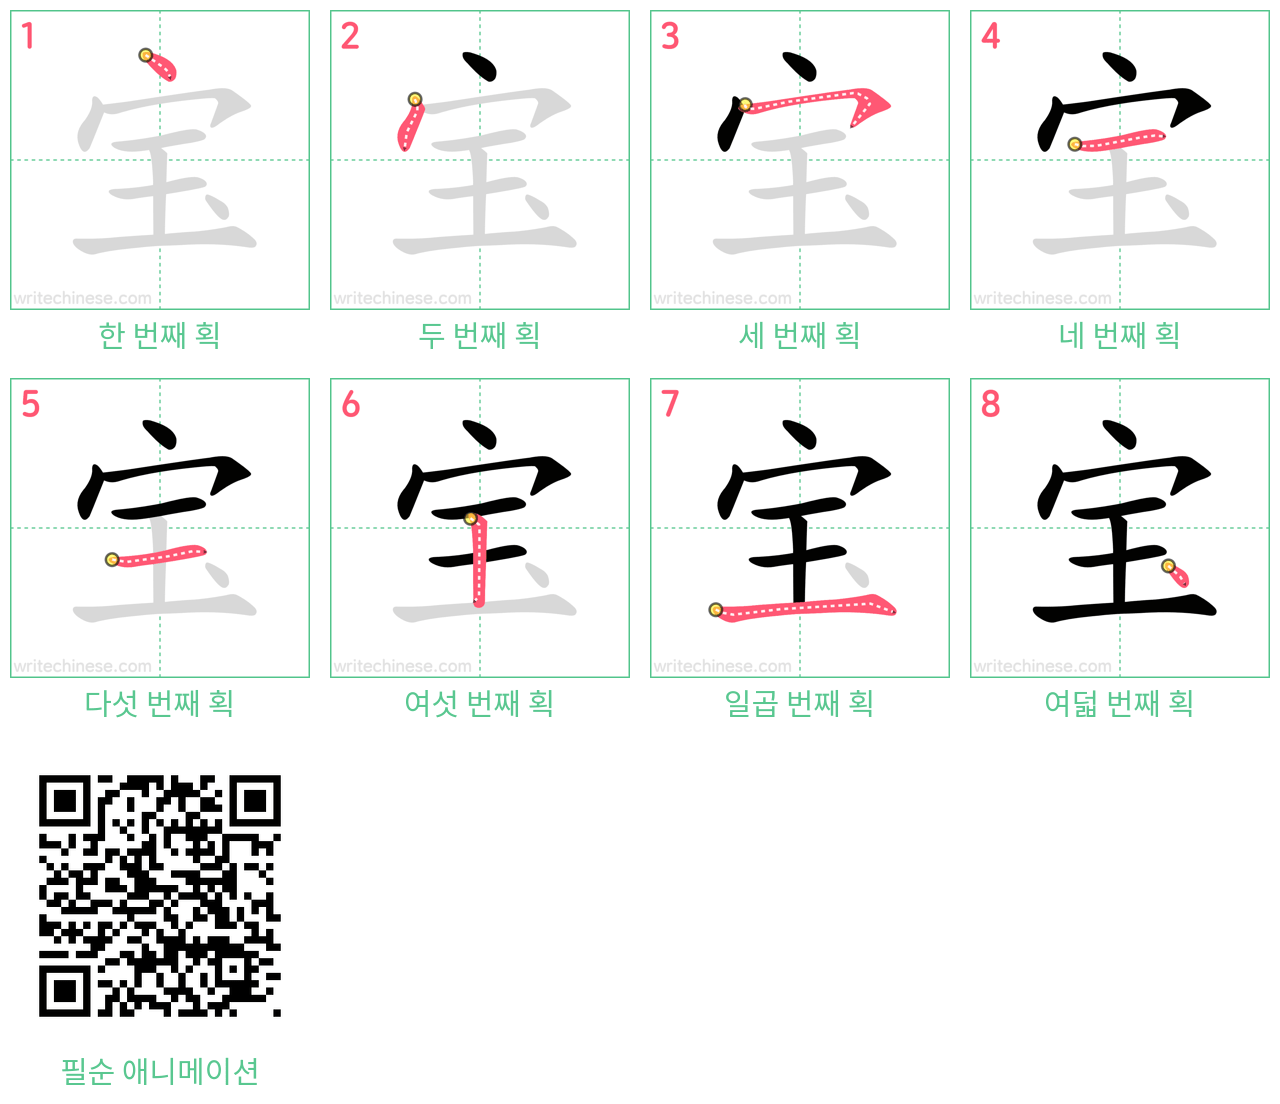 宝 step-by-step stroke order diagrams